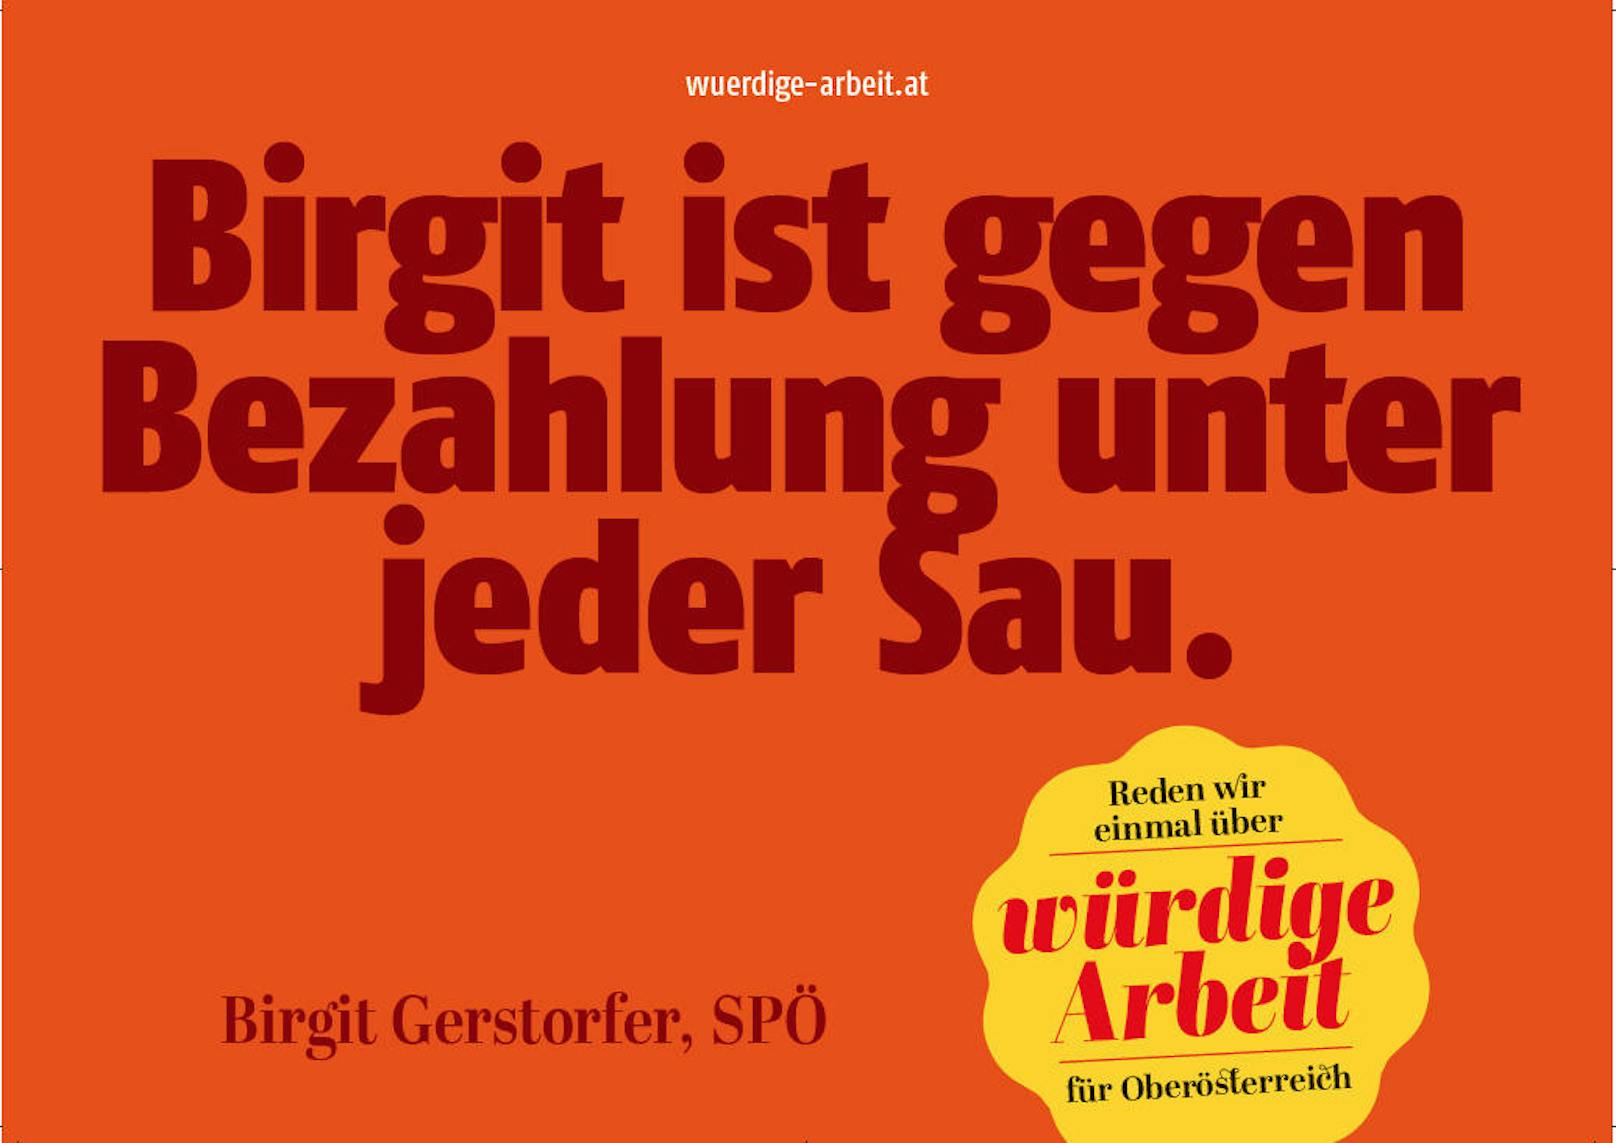 Übersetzung dieses Plakattextes: Birgit ist gegen schlechte Bezahlung.